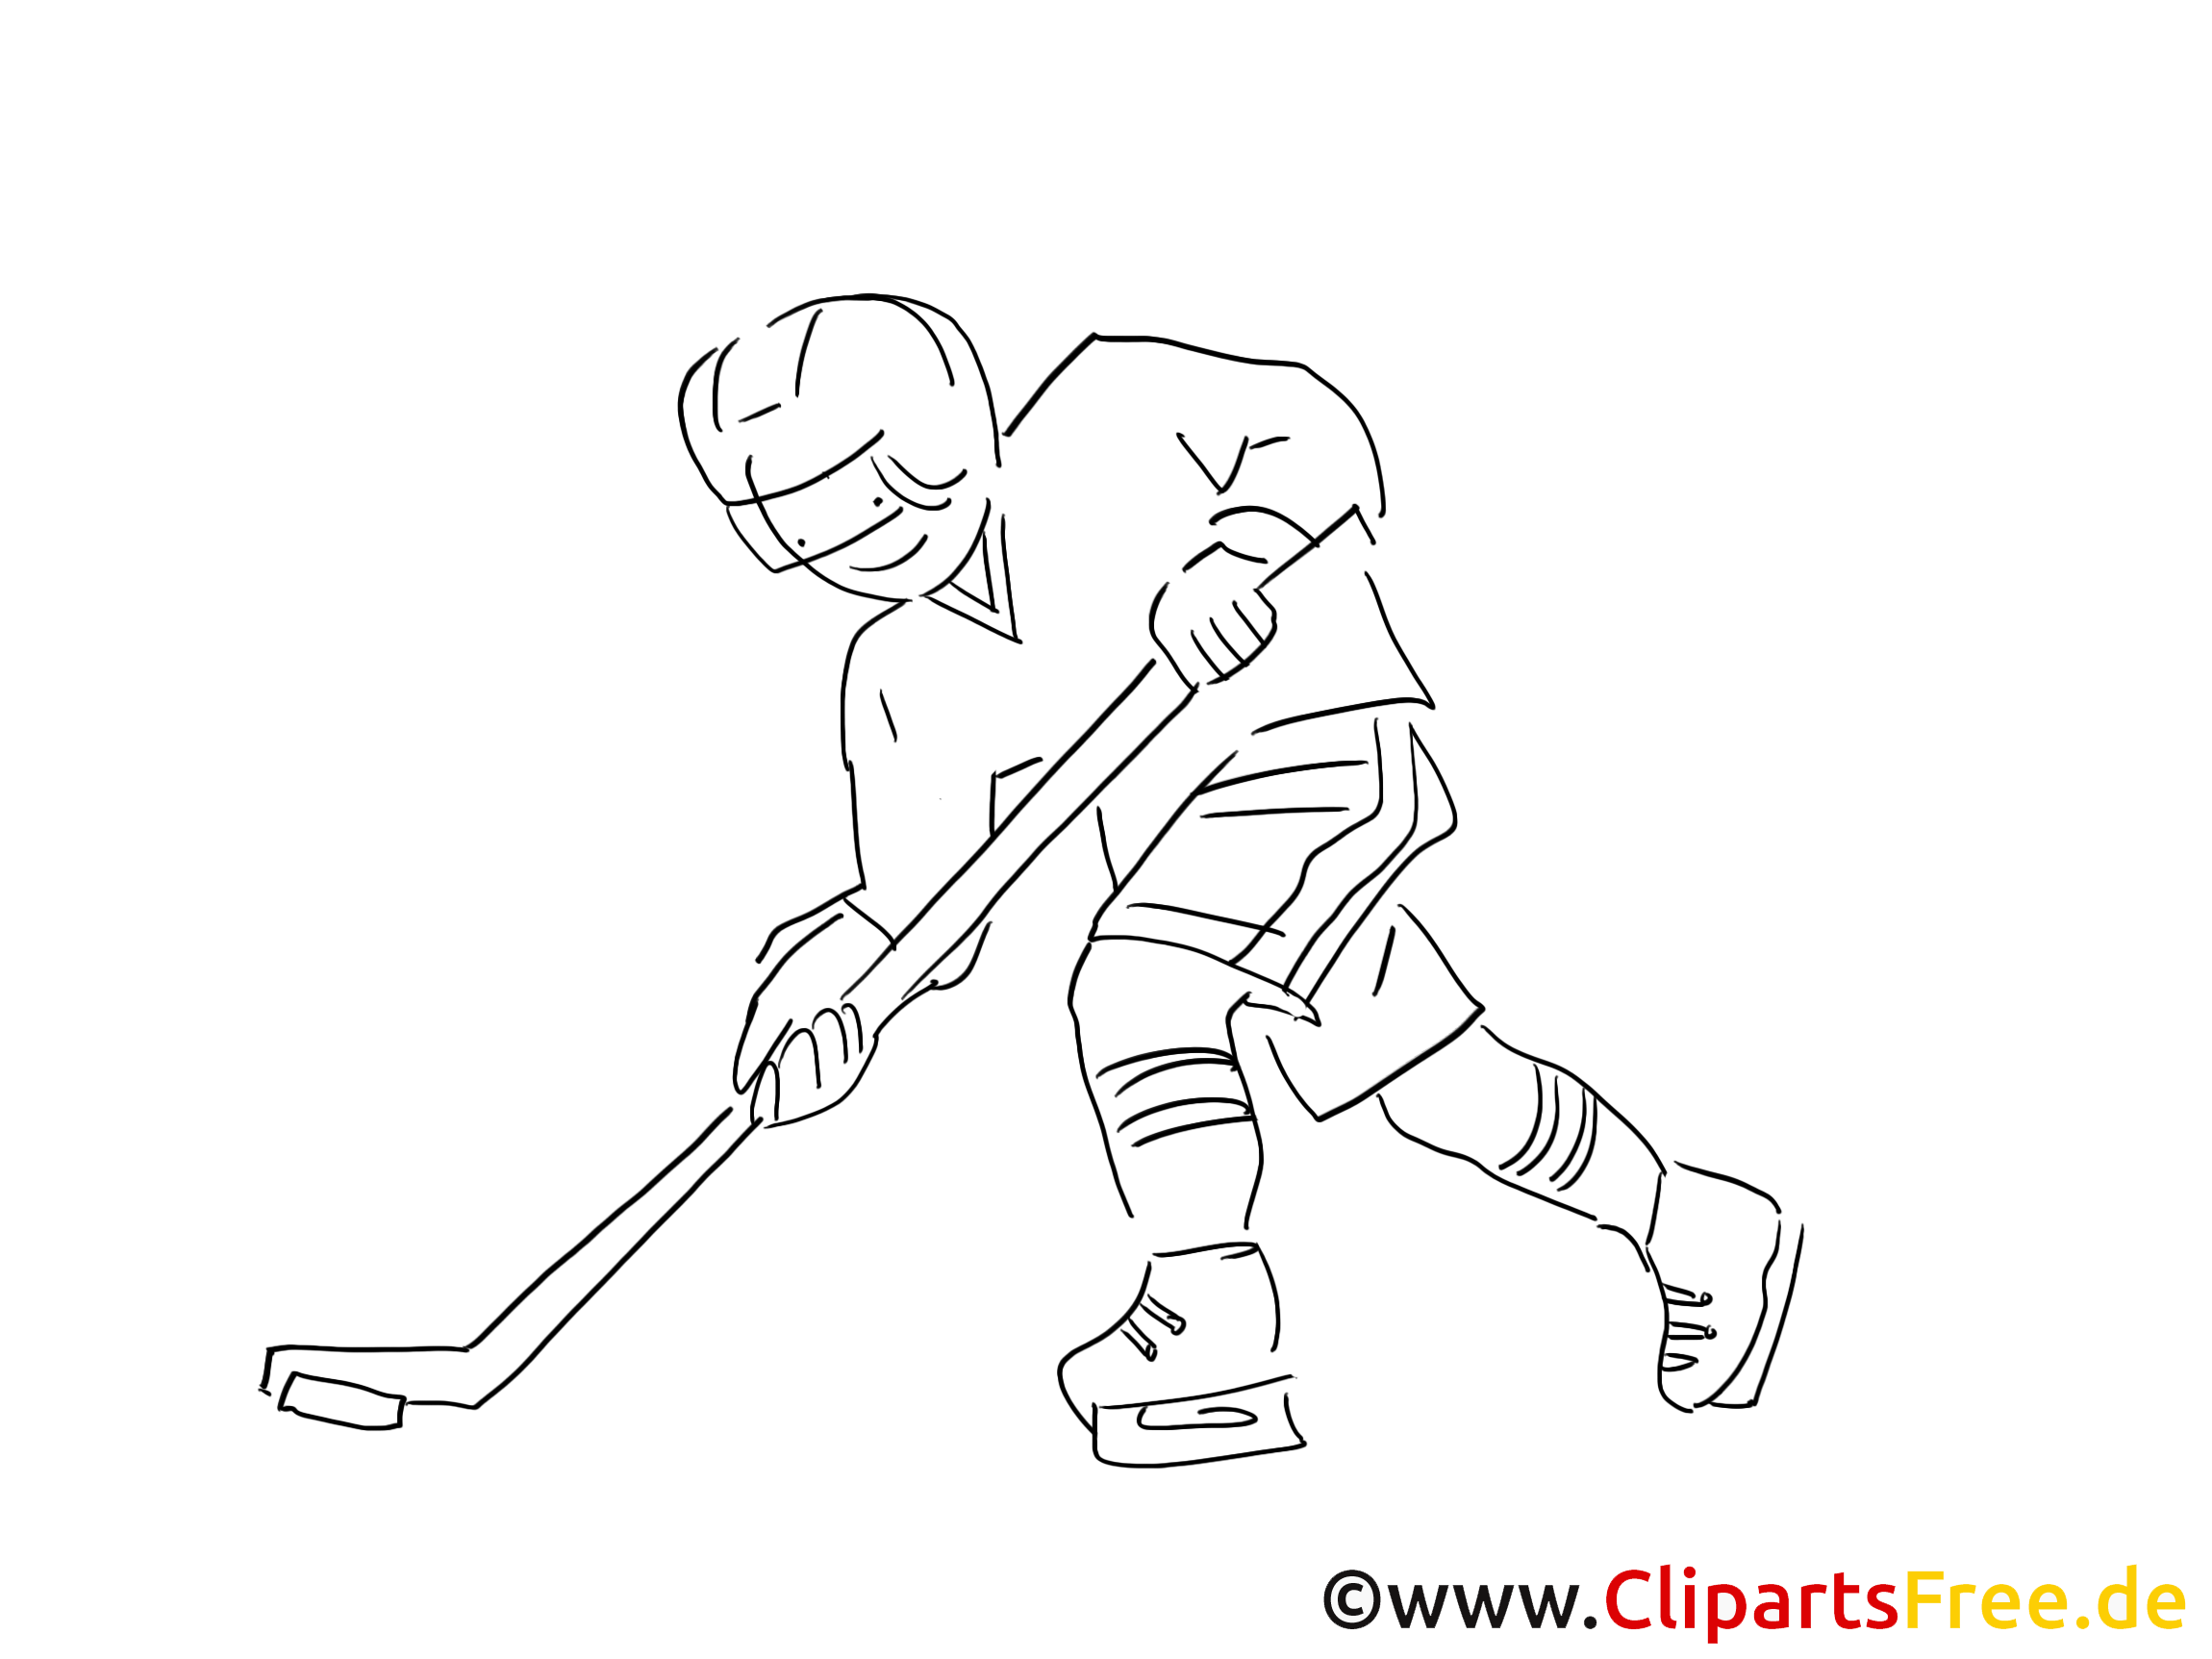 Sport d'hiver clip art gratuit – Hockey à colorier